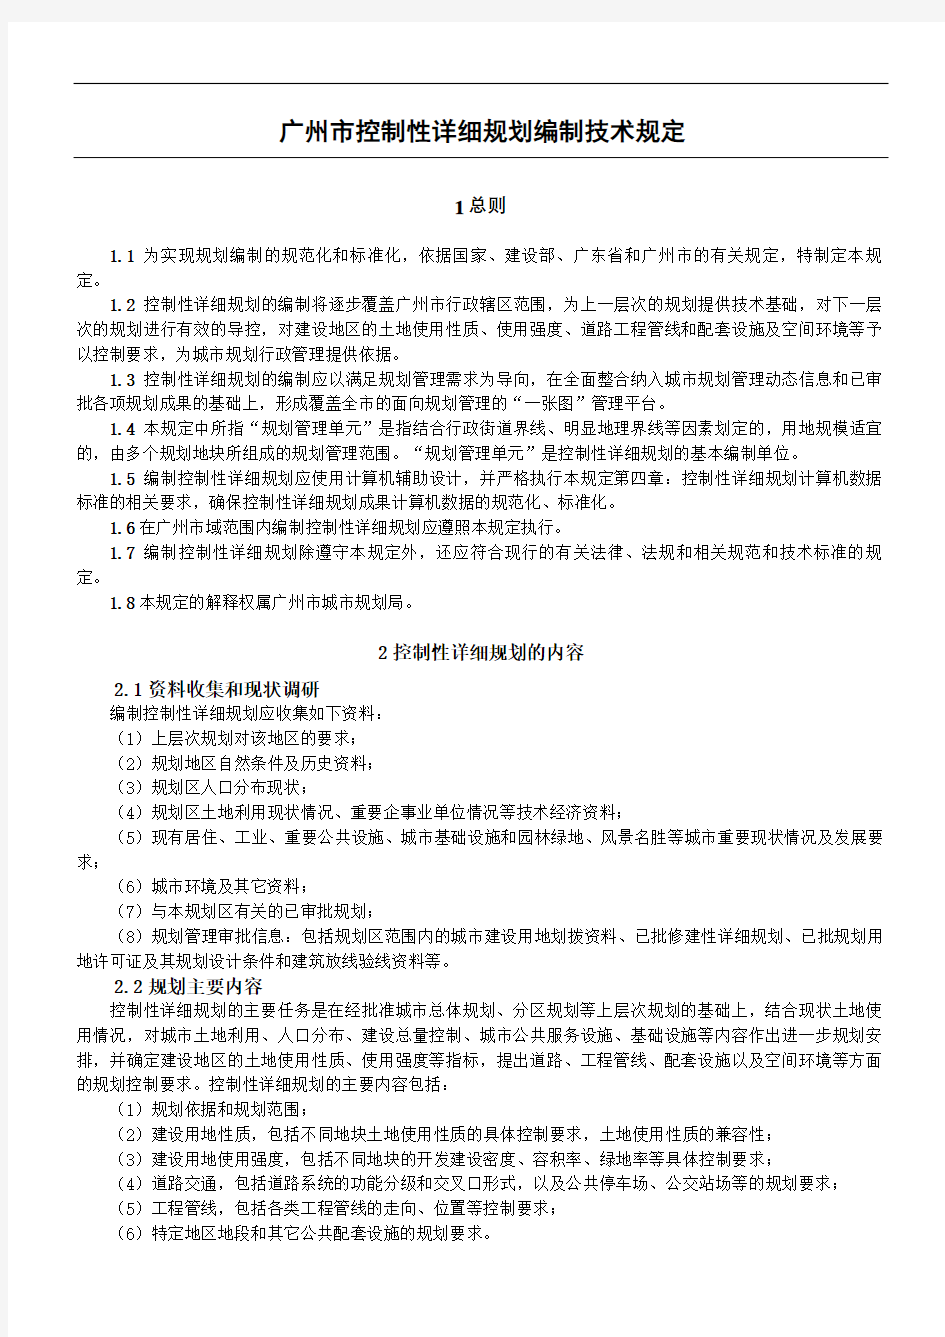 广州市控制性详细规划技术经验规定